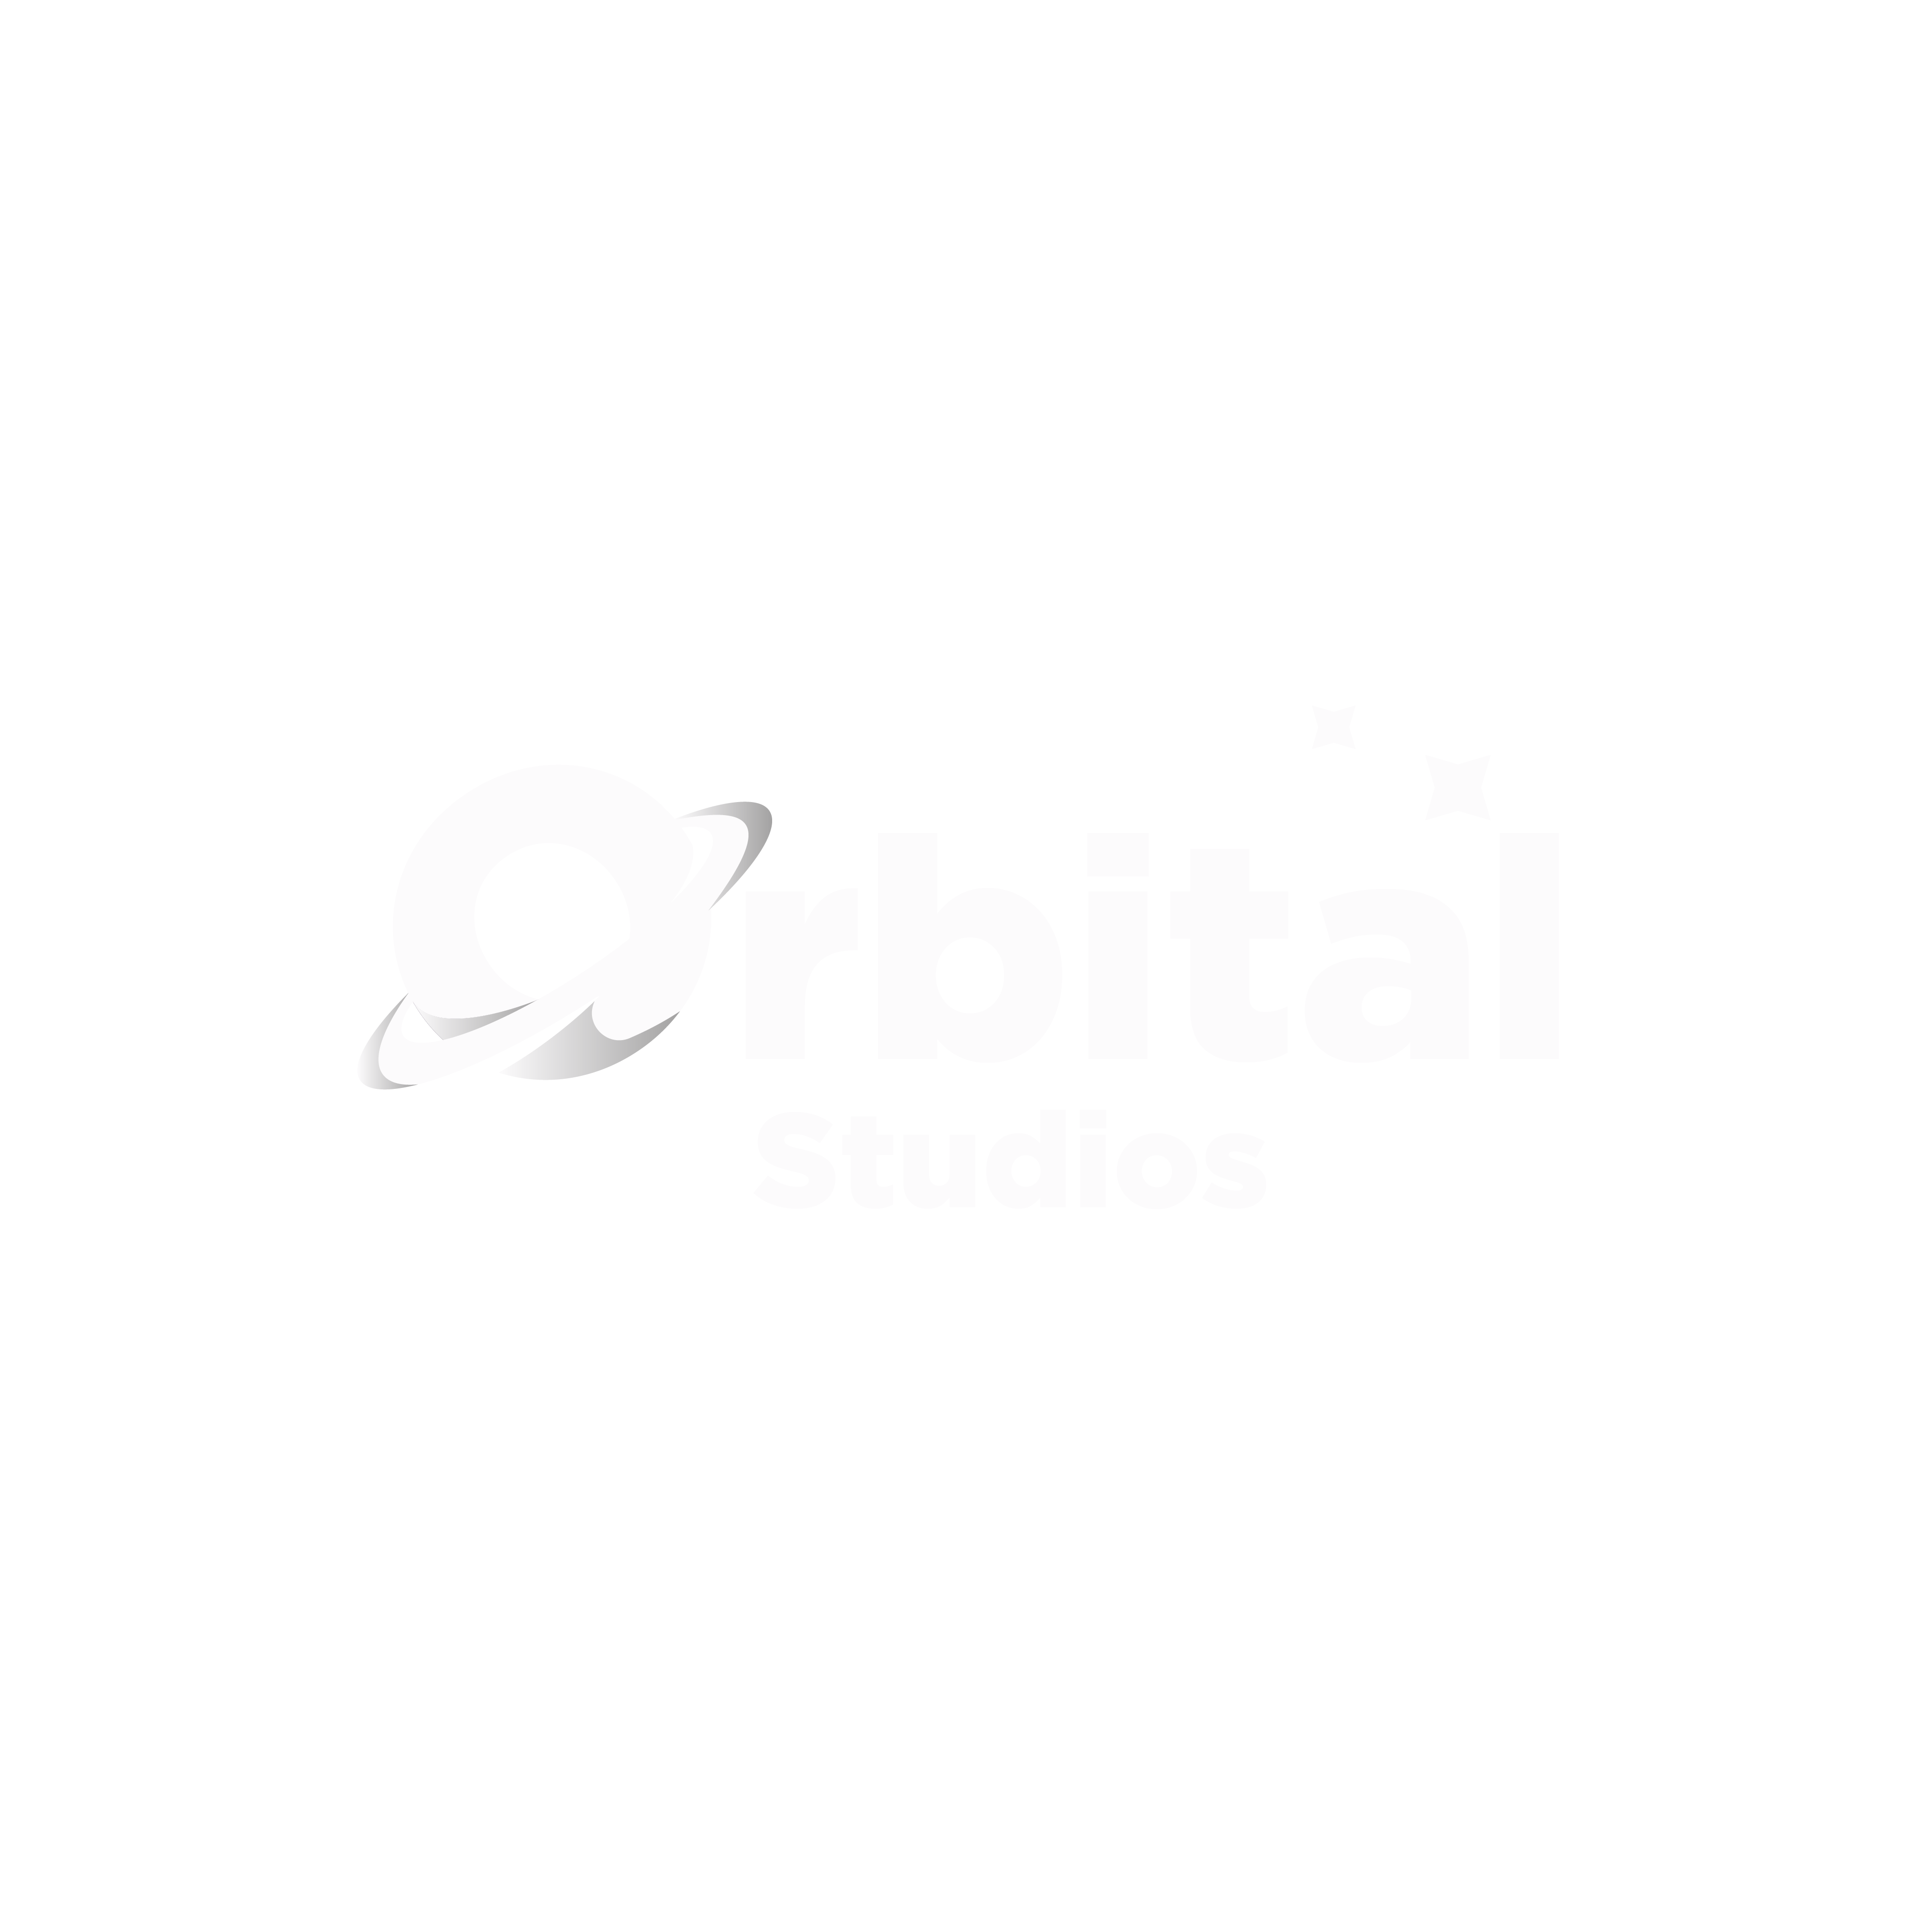 OrbitalStudios